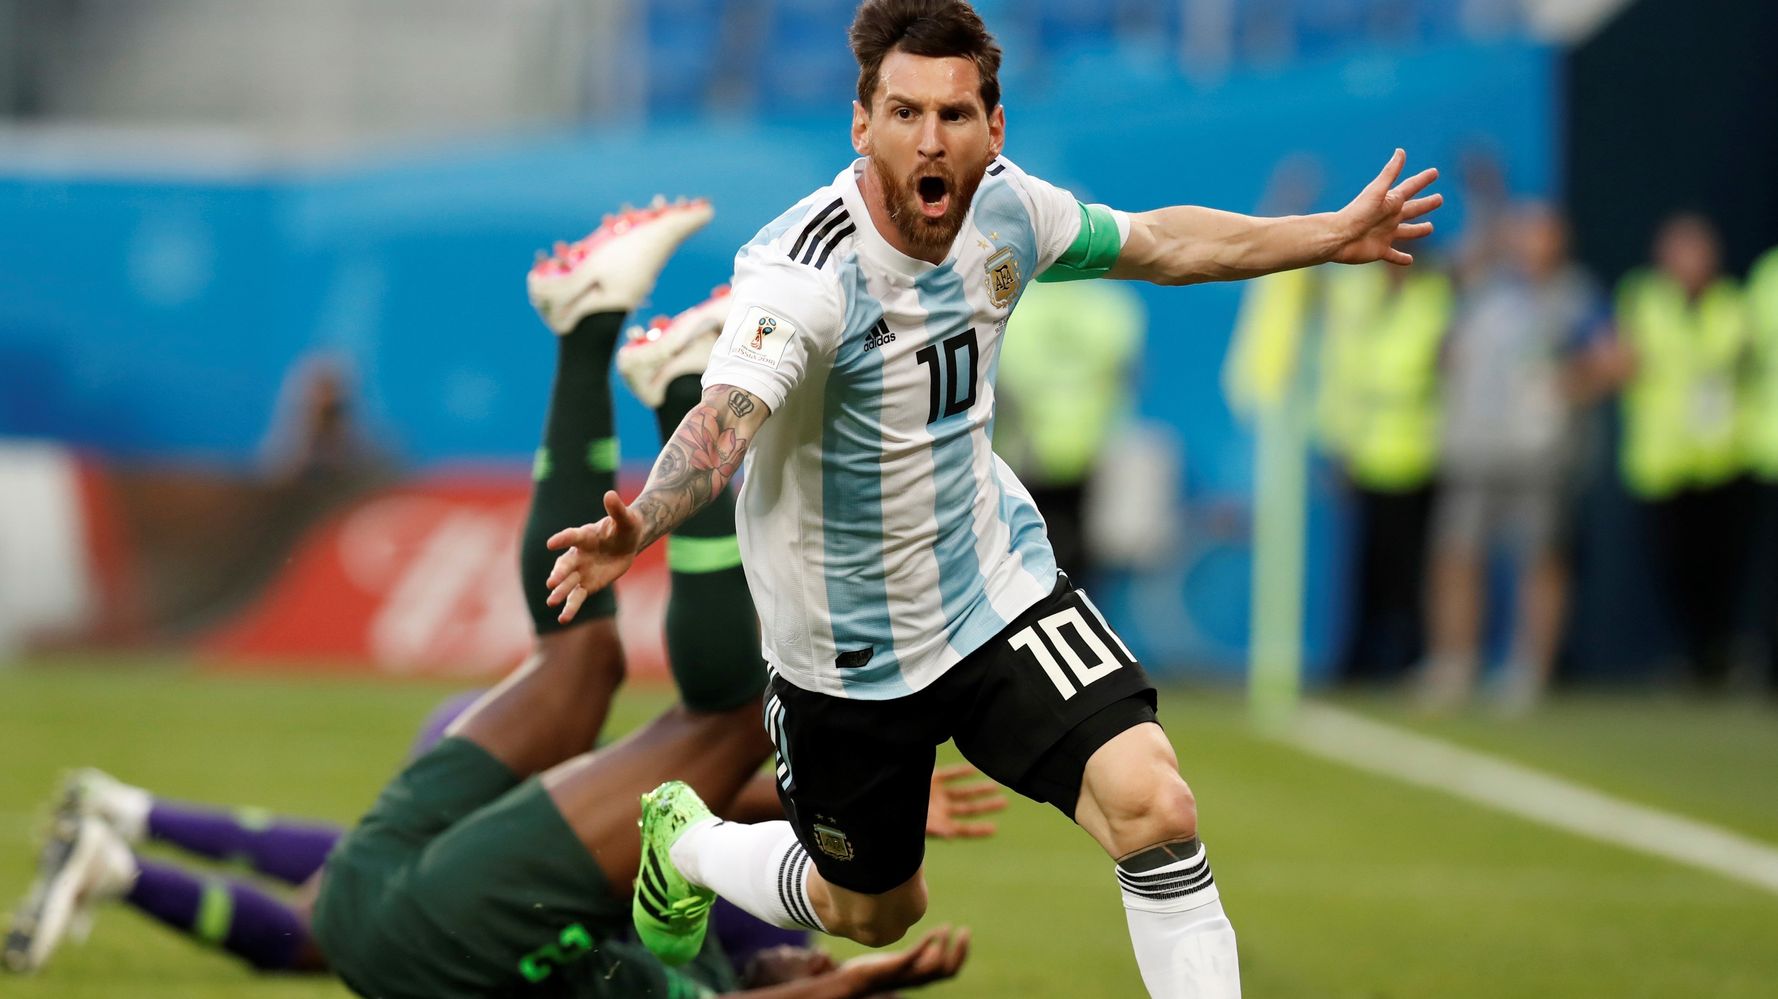 絶体絶命のアルゼンチンが決勝t進出 マラドーナ興奮しすぎて搬送 動画 ワールドカップ ハフポスト